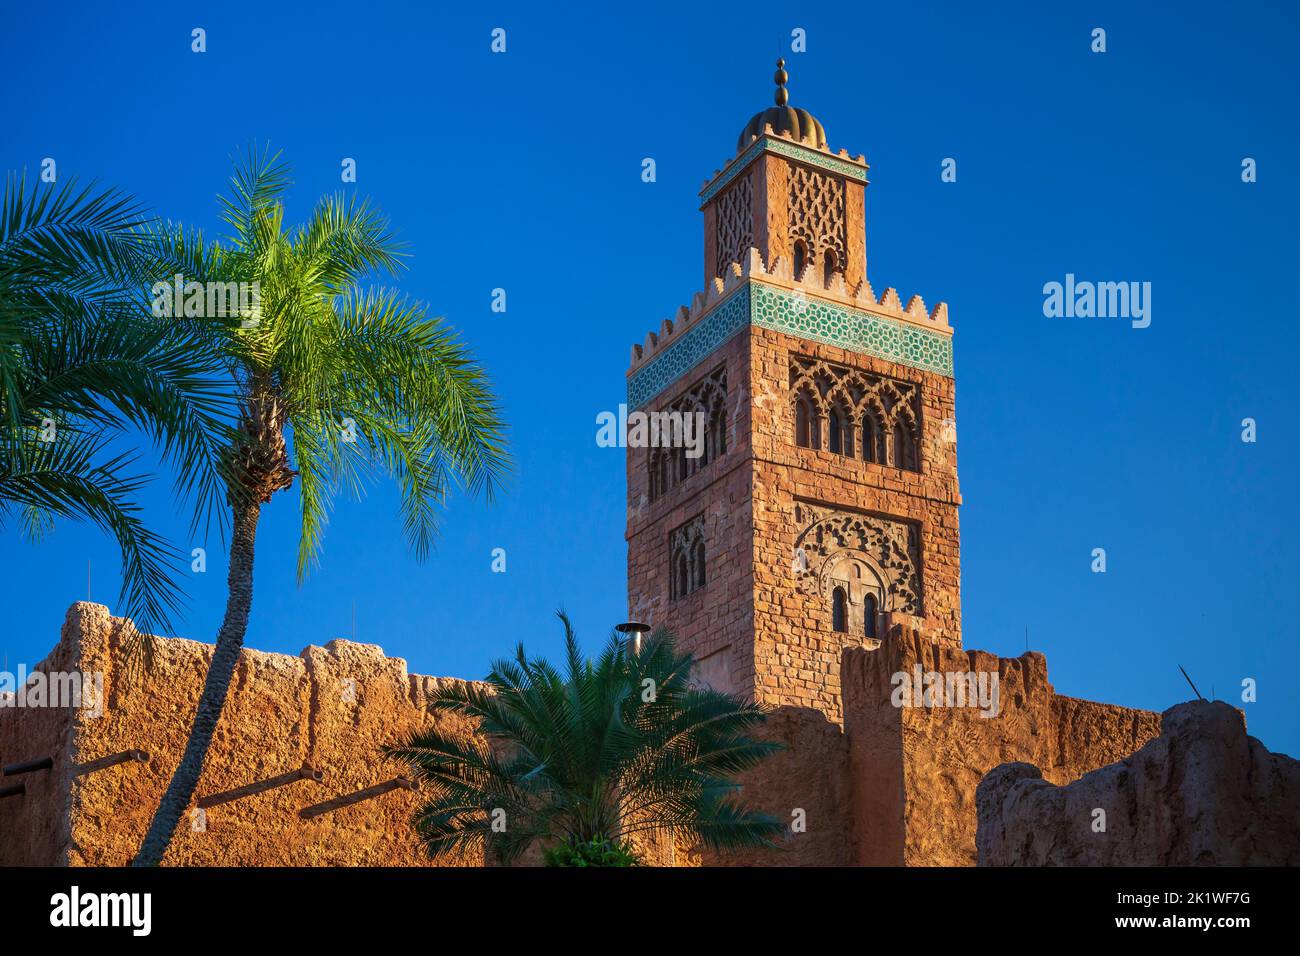 Morocco at Epcot Center, Orlando, Florida, USA. Stock Photo